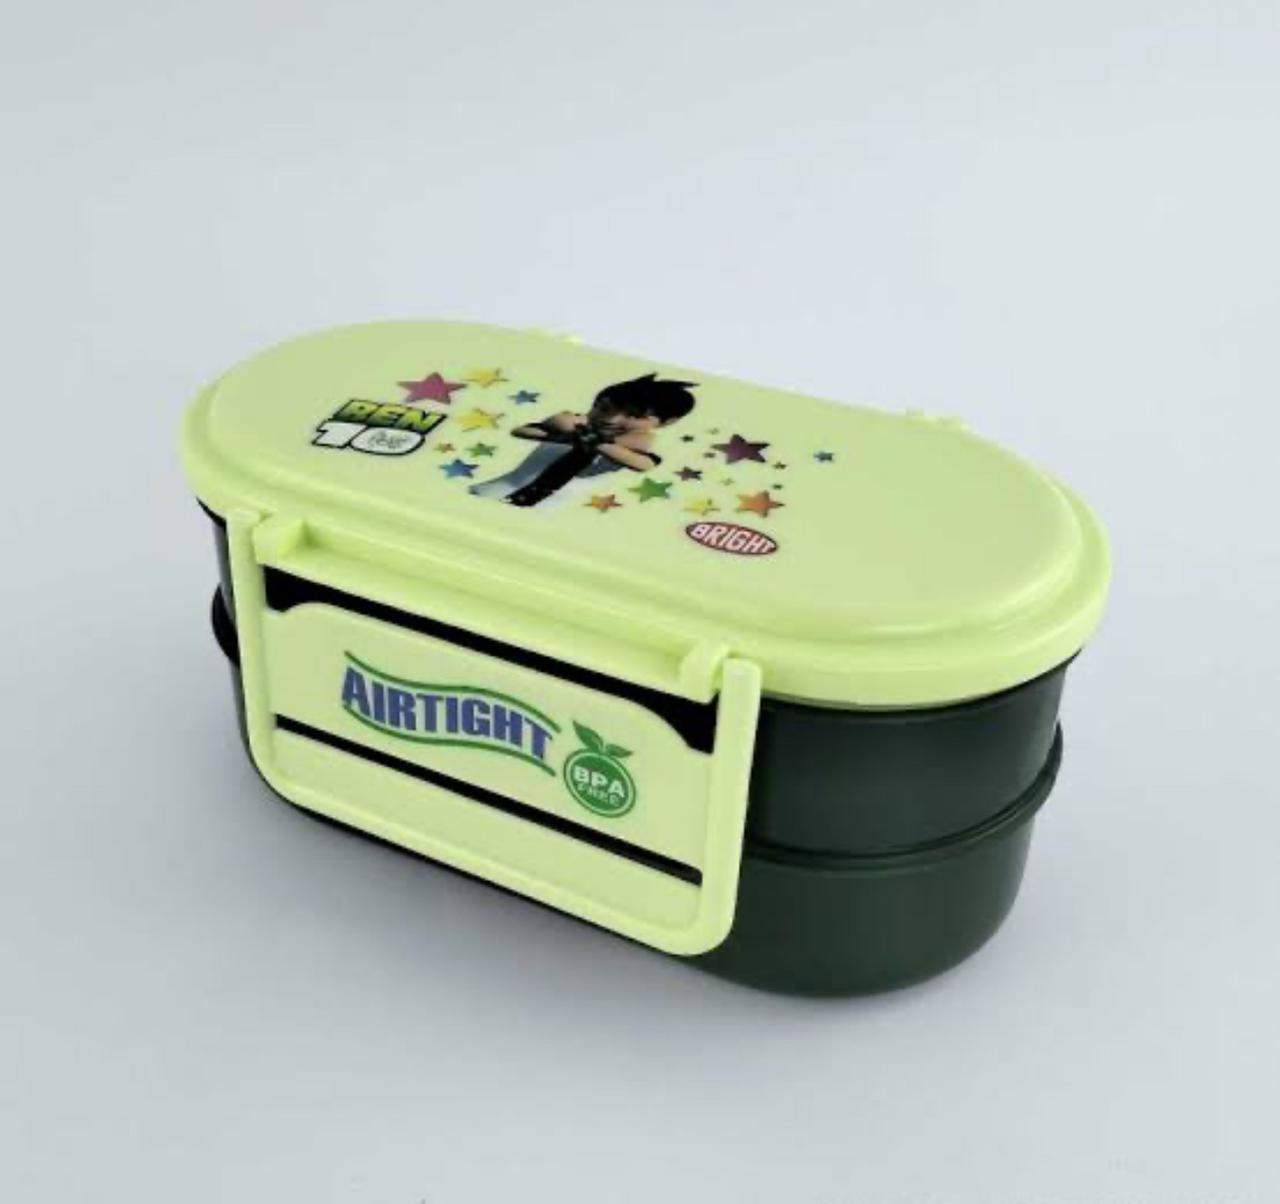 Rio airtight lunch box